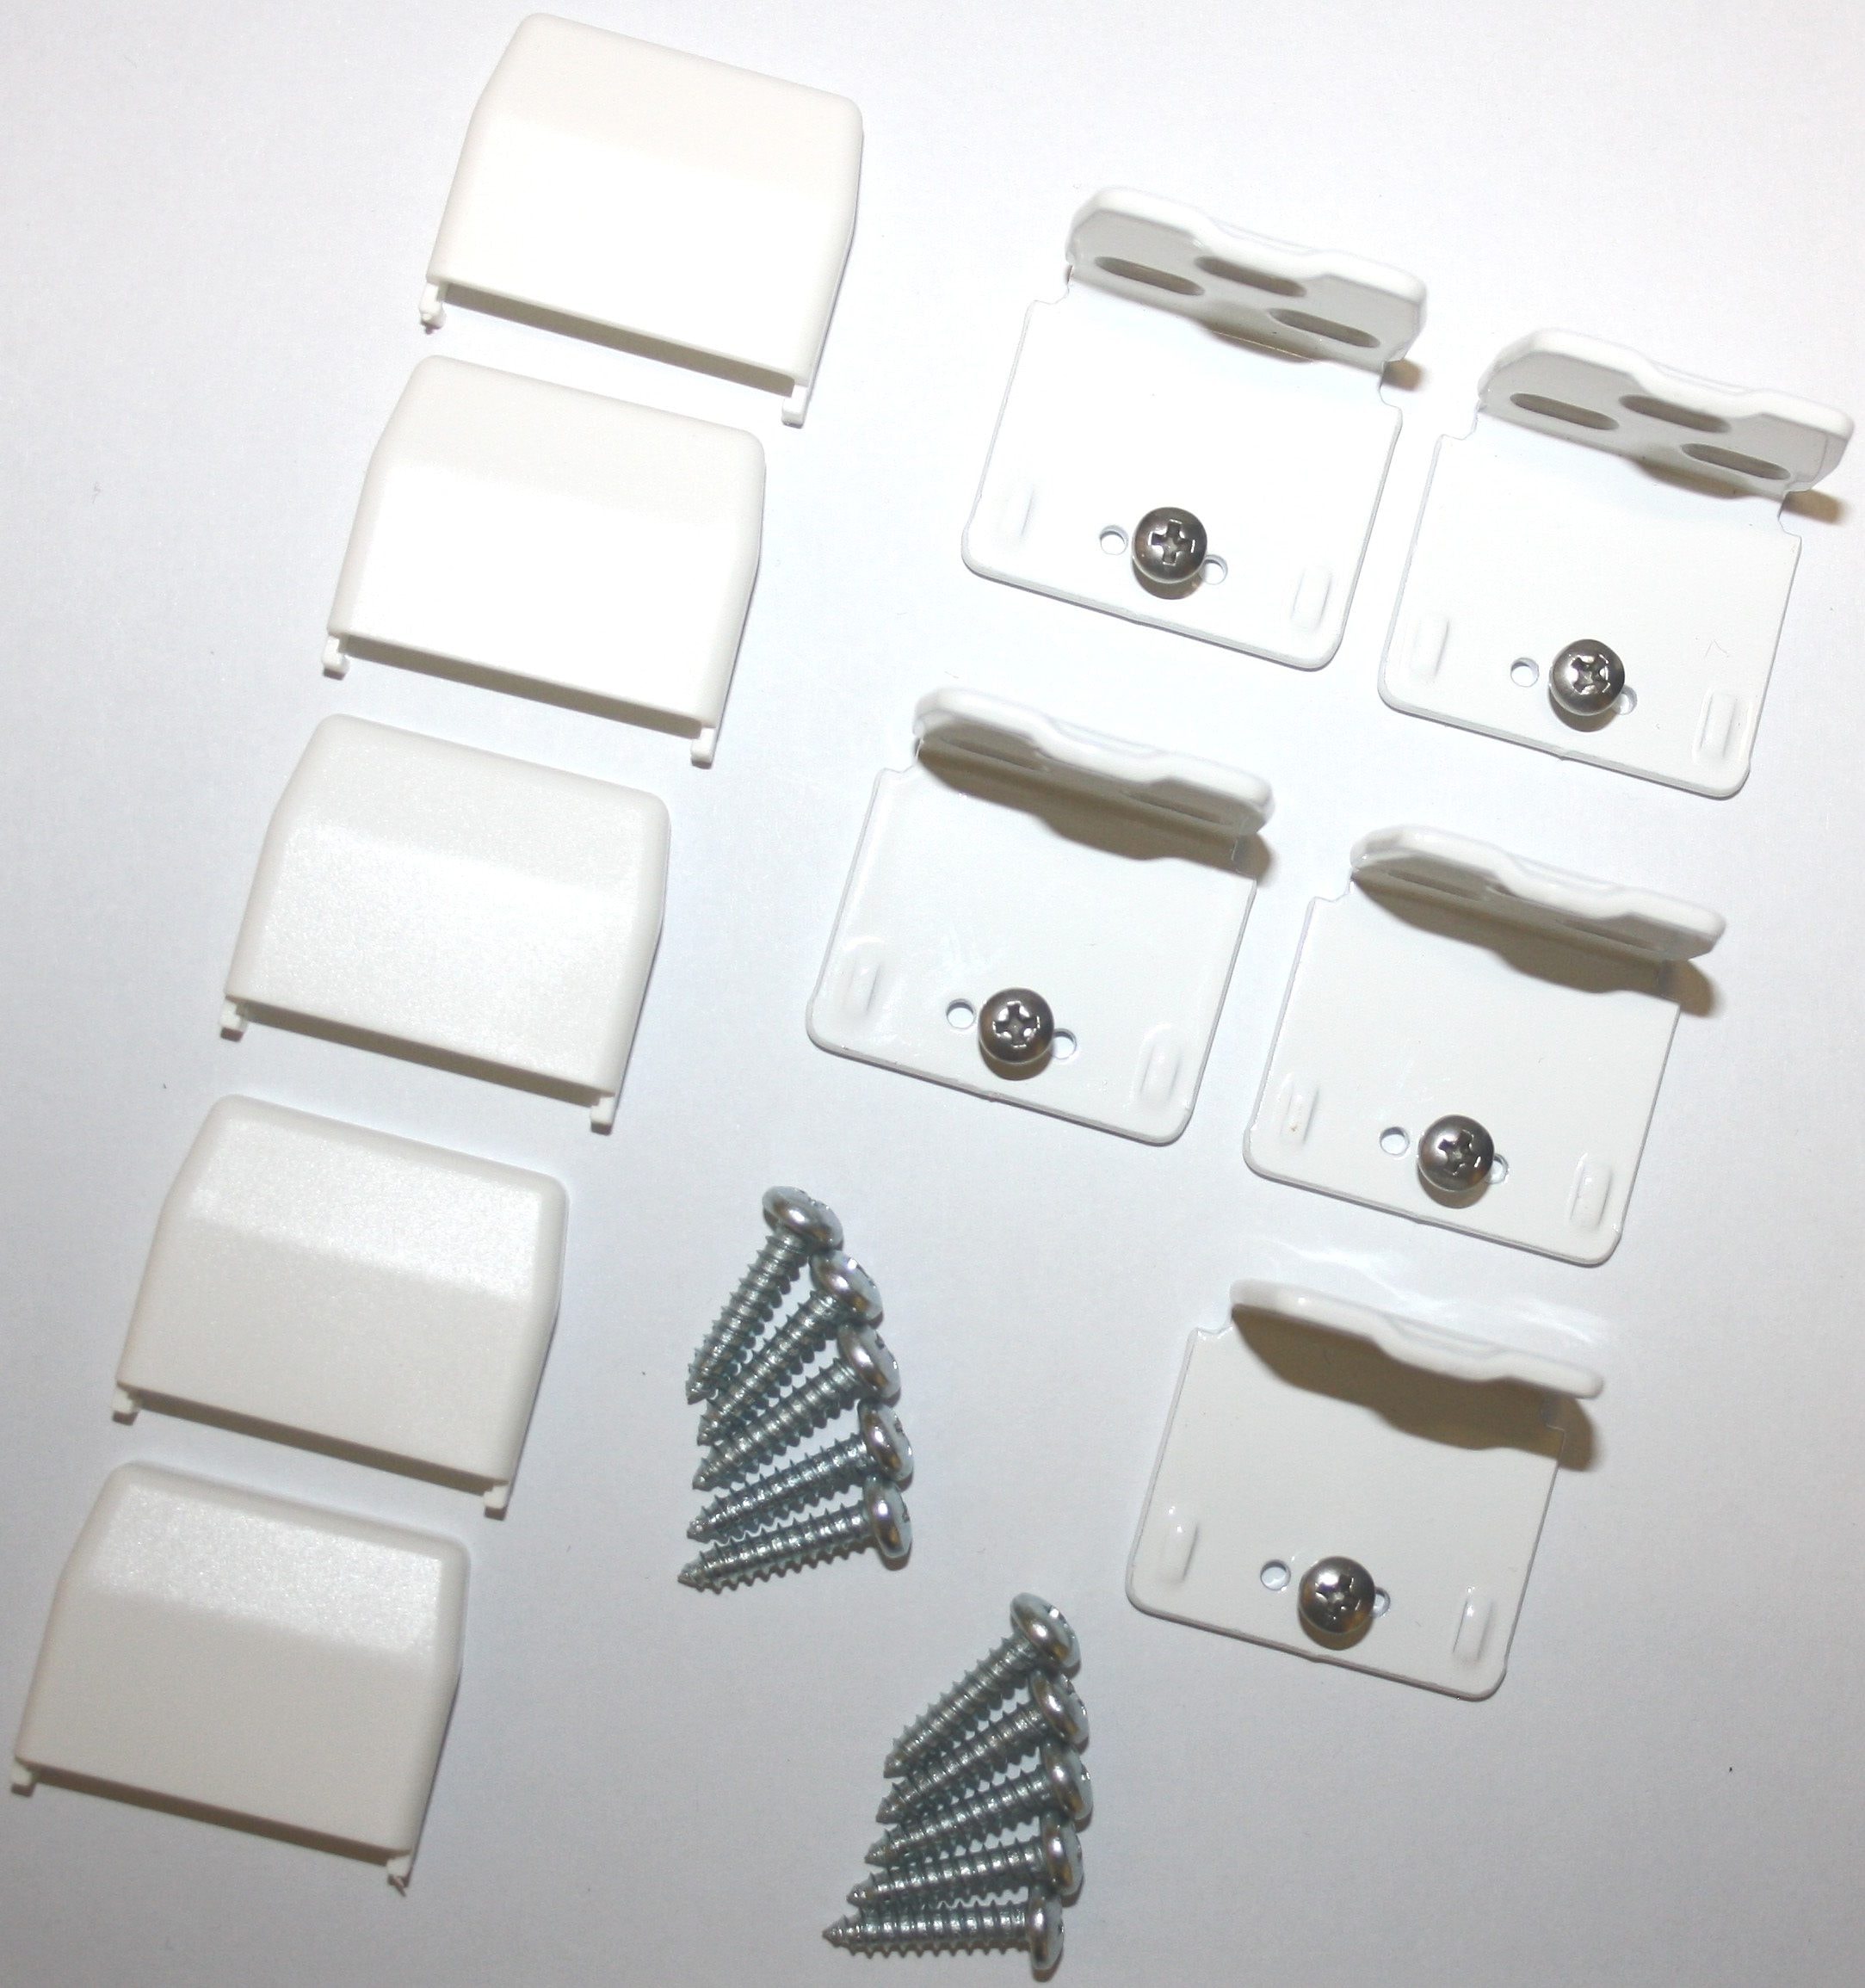 sunlines Sichtschutzzüge Montagezubehör, Packung, 5 St., für Plissees, für die Rahmen/-Wandmontage von Plissees